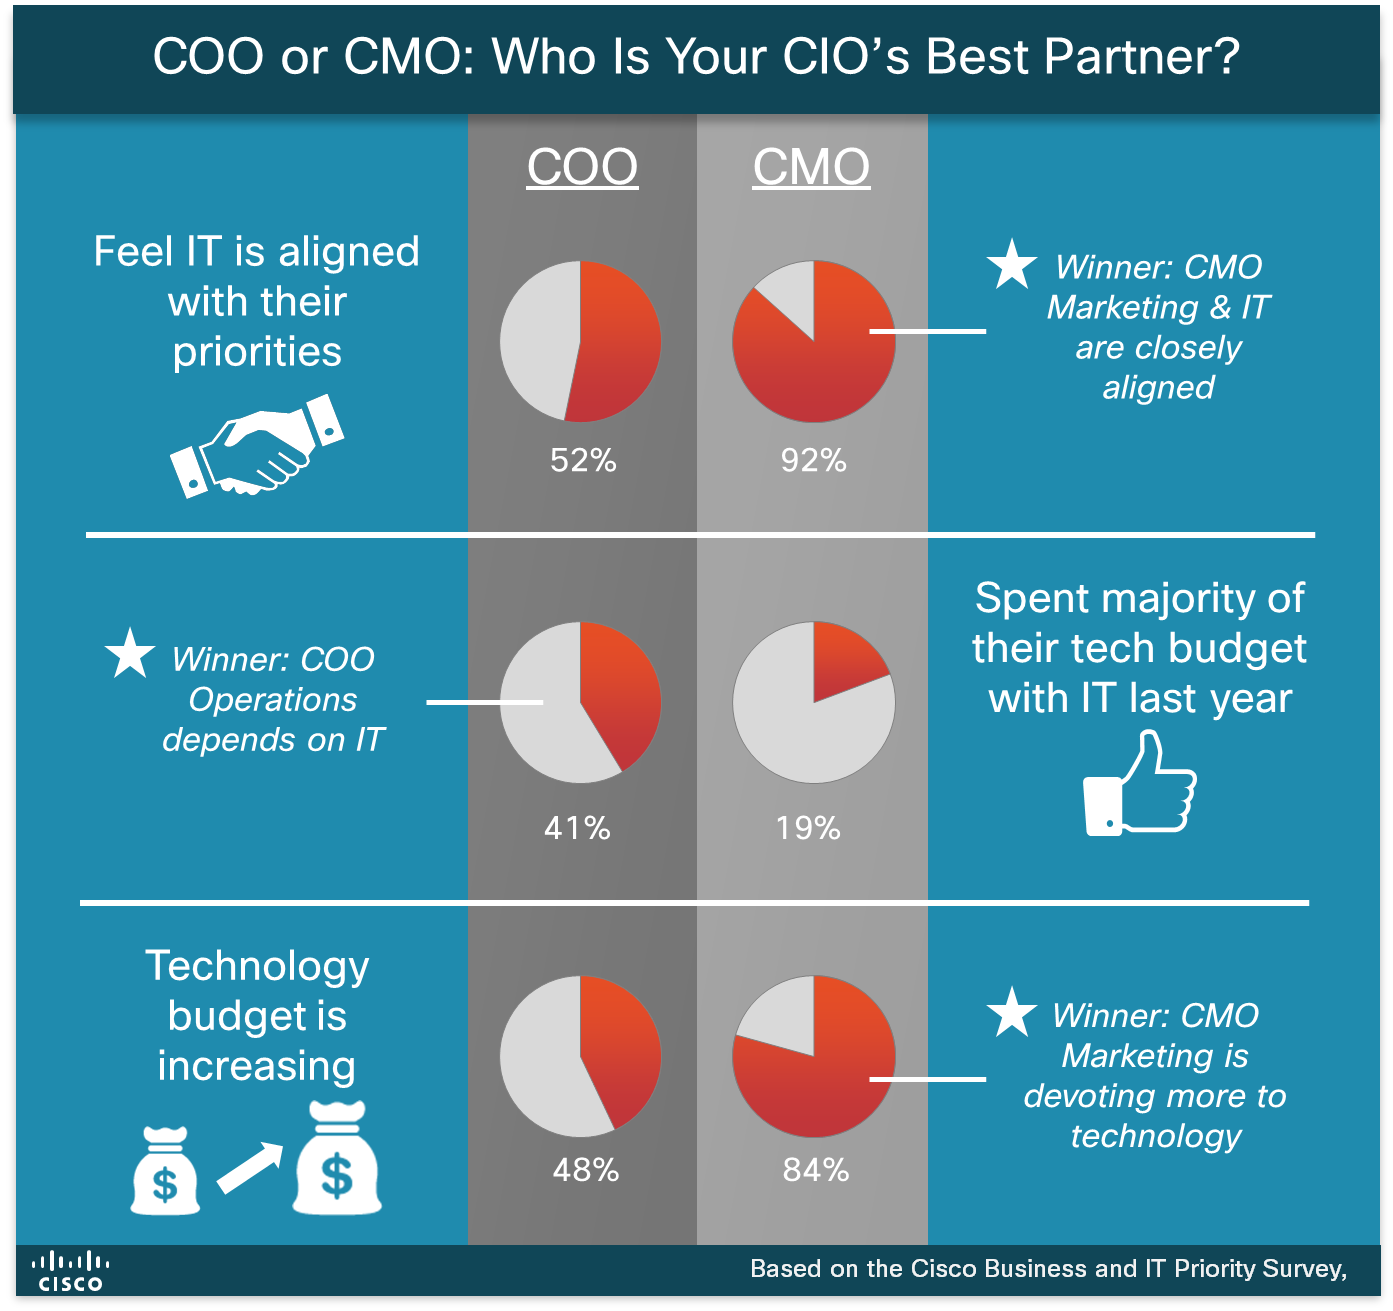 COO or CMO for CIO Partnership Cisco